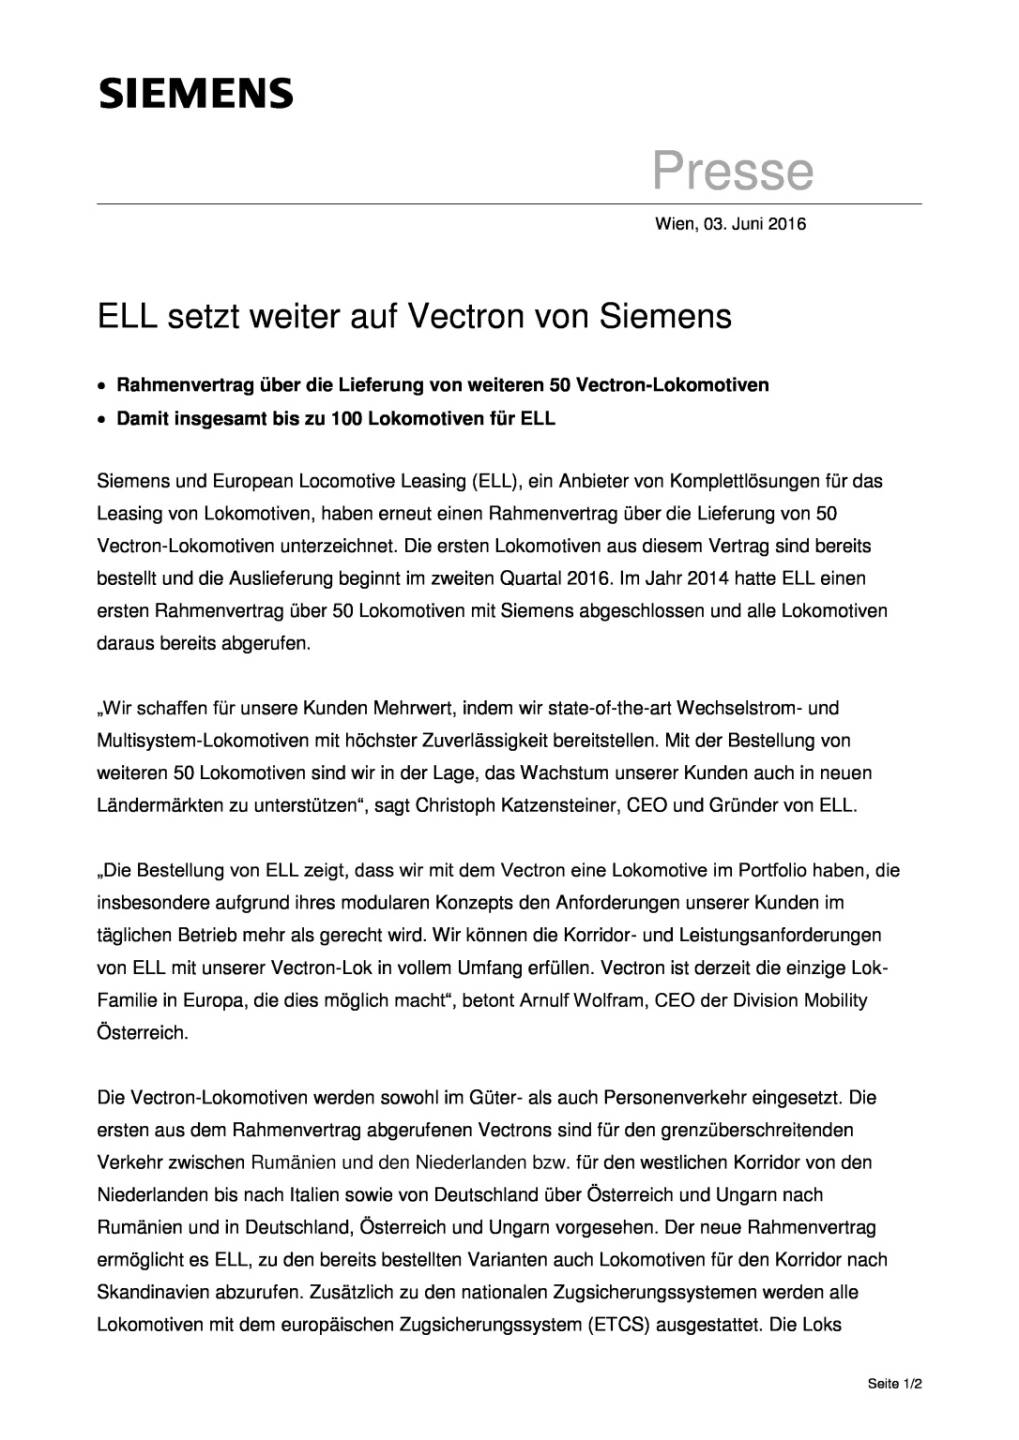 Siemens: ELL setzt weiter auf Vectron, Seite 1/2, komplettes Dokument unter http://boerse-social.com/static/uploads/file_1167_siemens_ell_setzt_weiter_auf_vectron.pdf